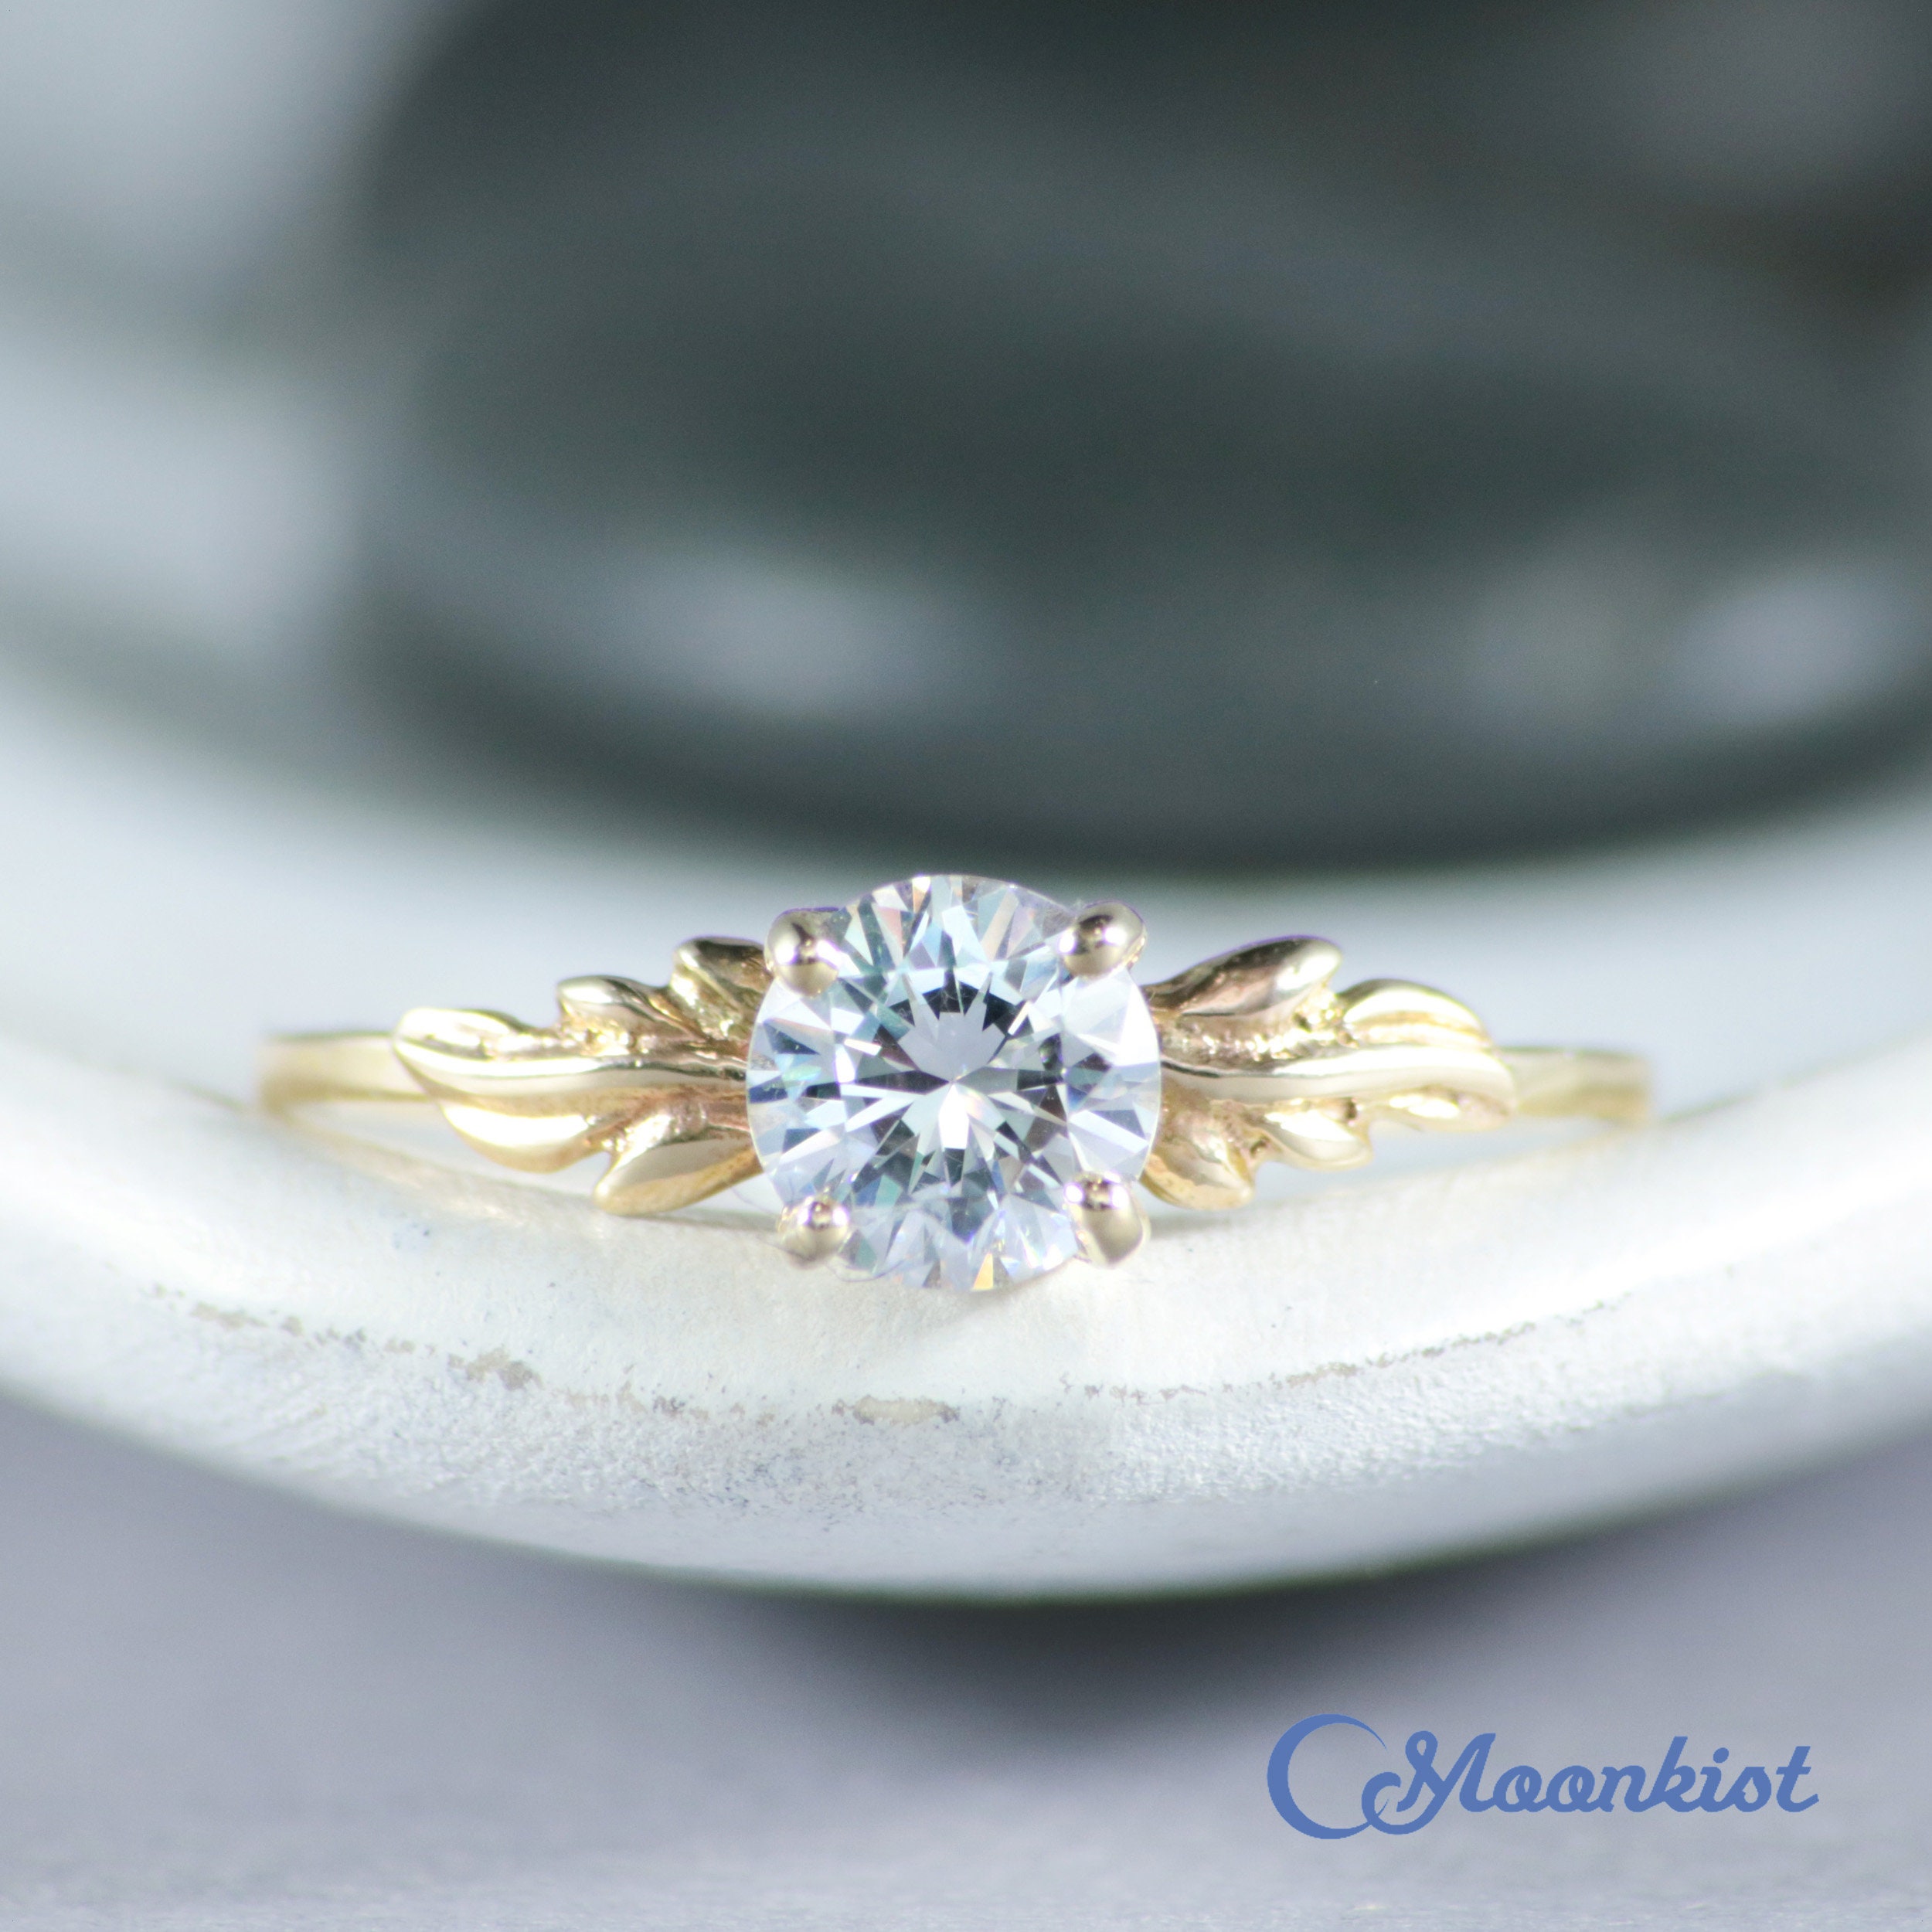 1 ct Blue MoissaniteEngagement Ring for her 14k goldSide stone Moissanite Gift for herAnniversary Gift for her